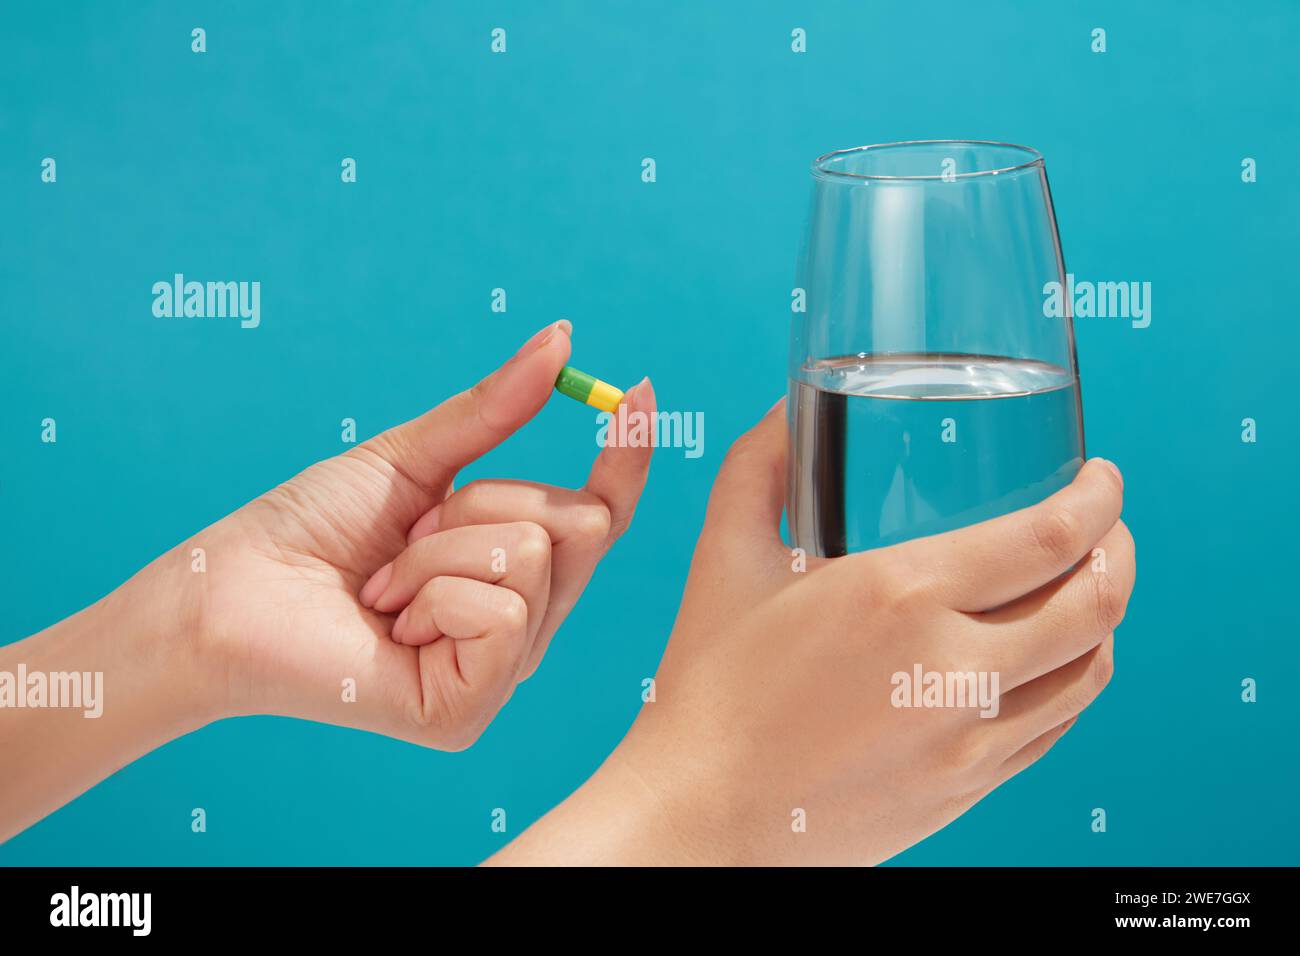 Die minimale Szene einer gelb-grünen Kapsel wird von einem Handmodell gehalten, einem mit Wasser gefüllten Glas in einer anderen Hand. Vitamin kann die Lebensqualität erhöhen Stockfoto